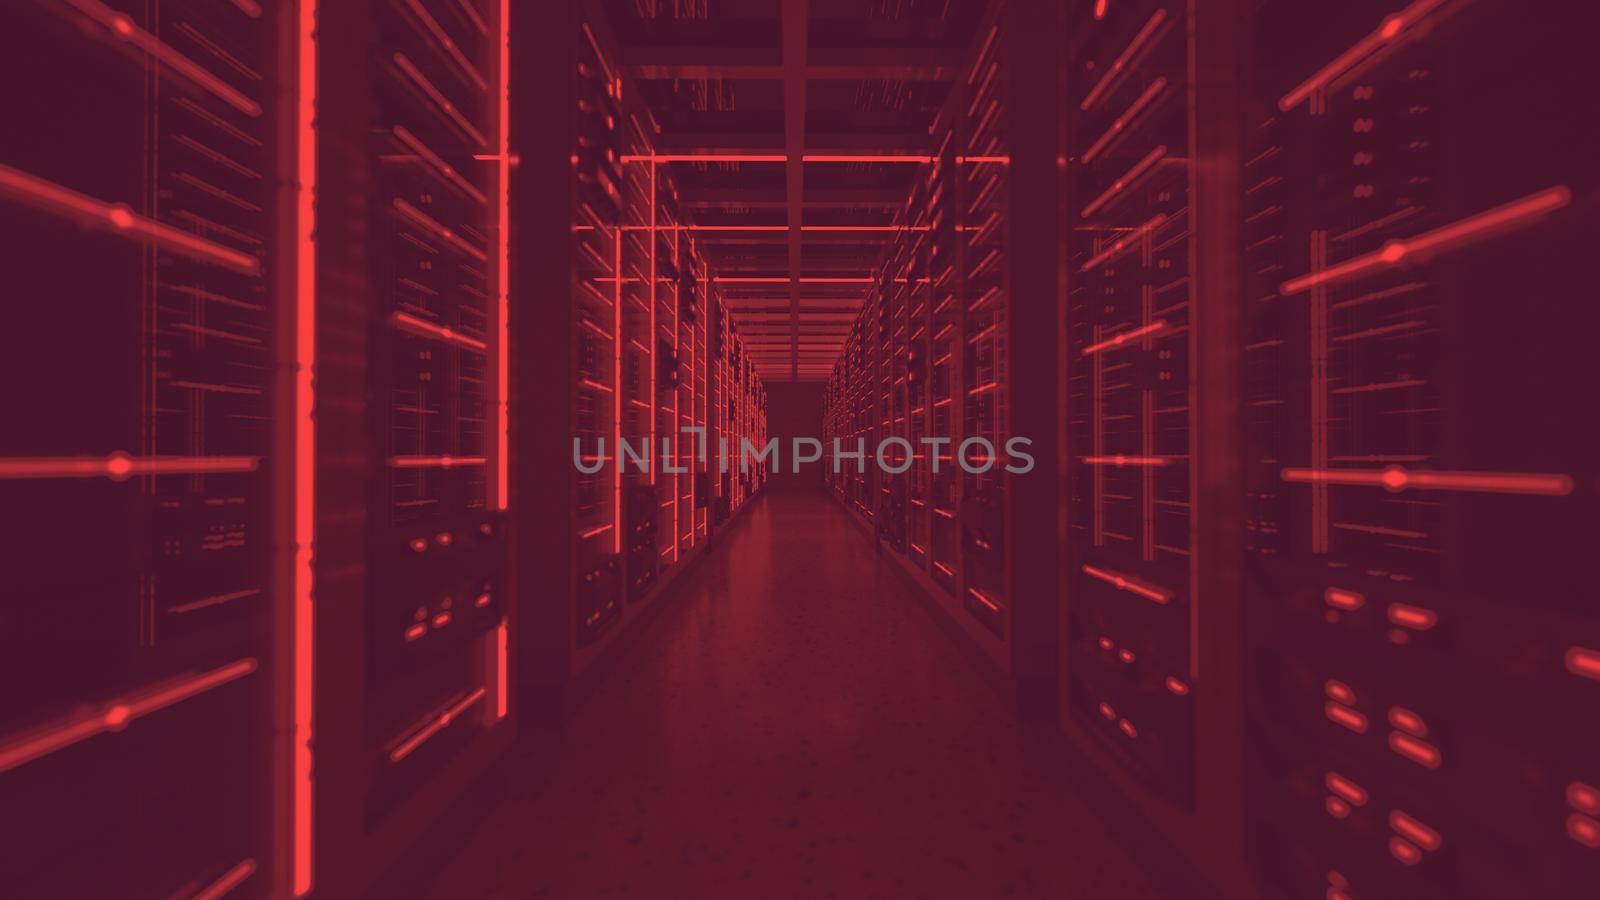 Server racks in computer network security server room data center red lights alert. 3D render